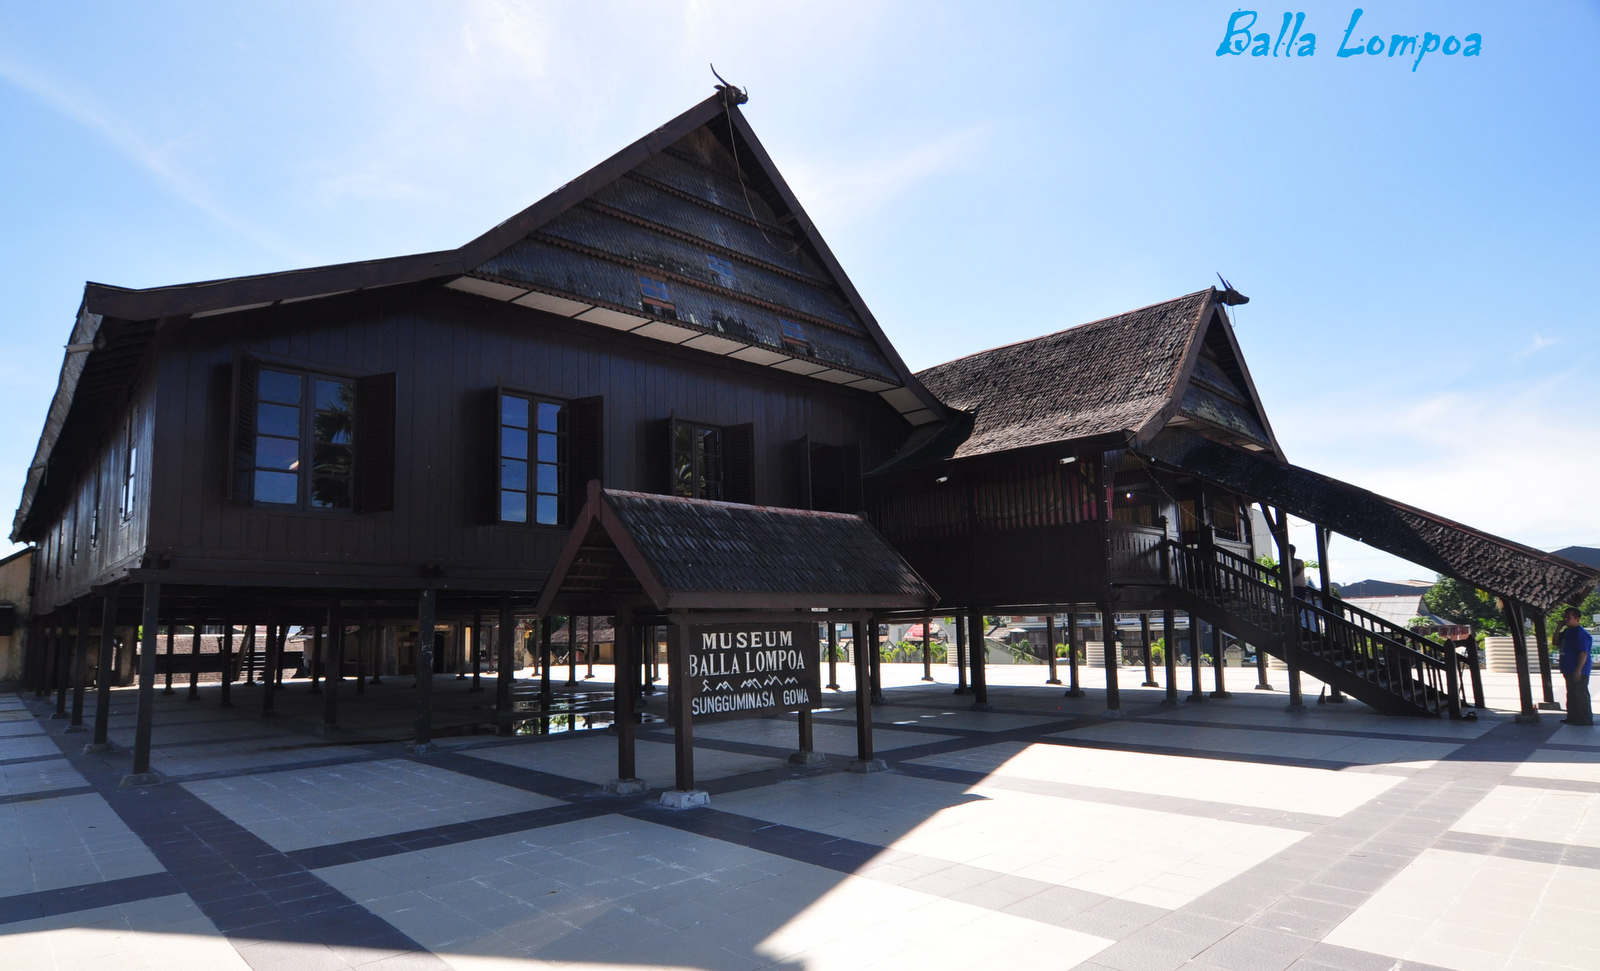  Rumah Adat Sulawesi Selatan 